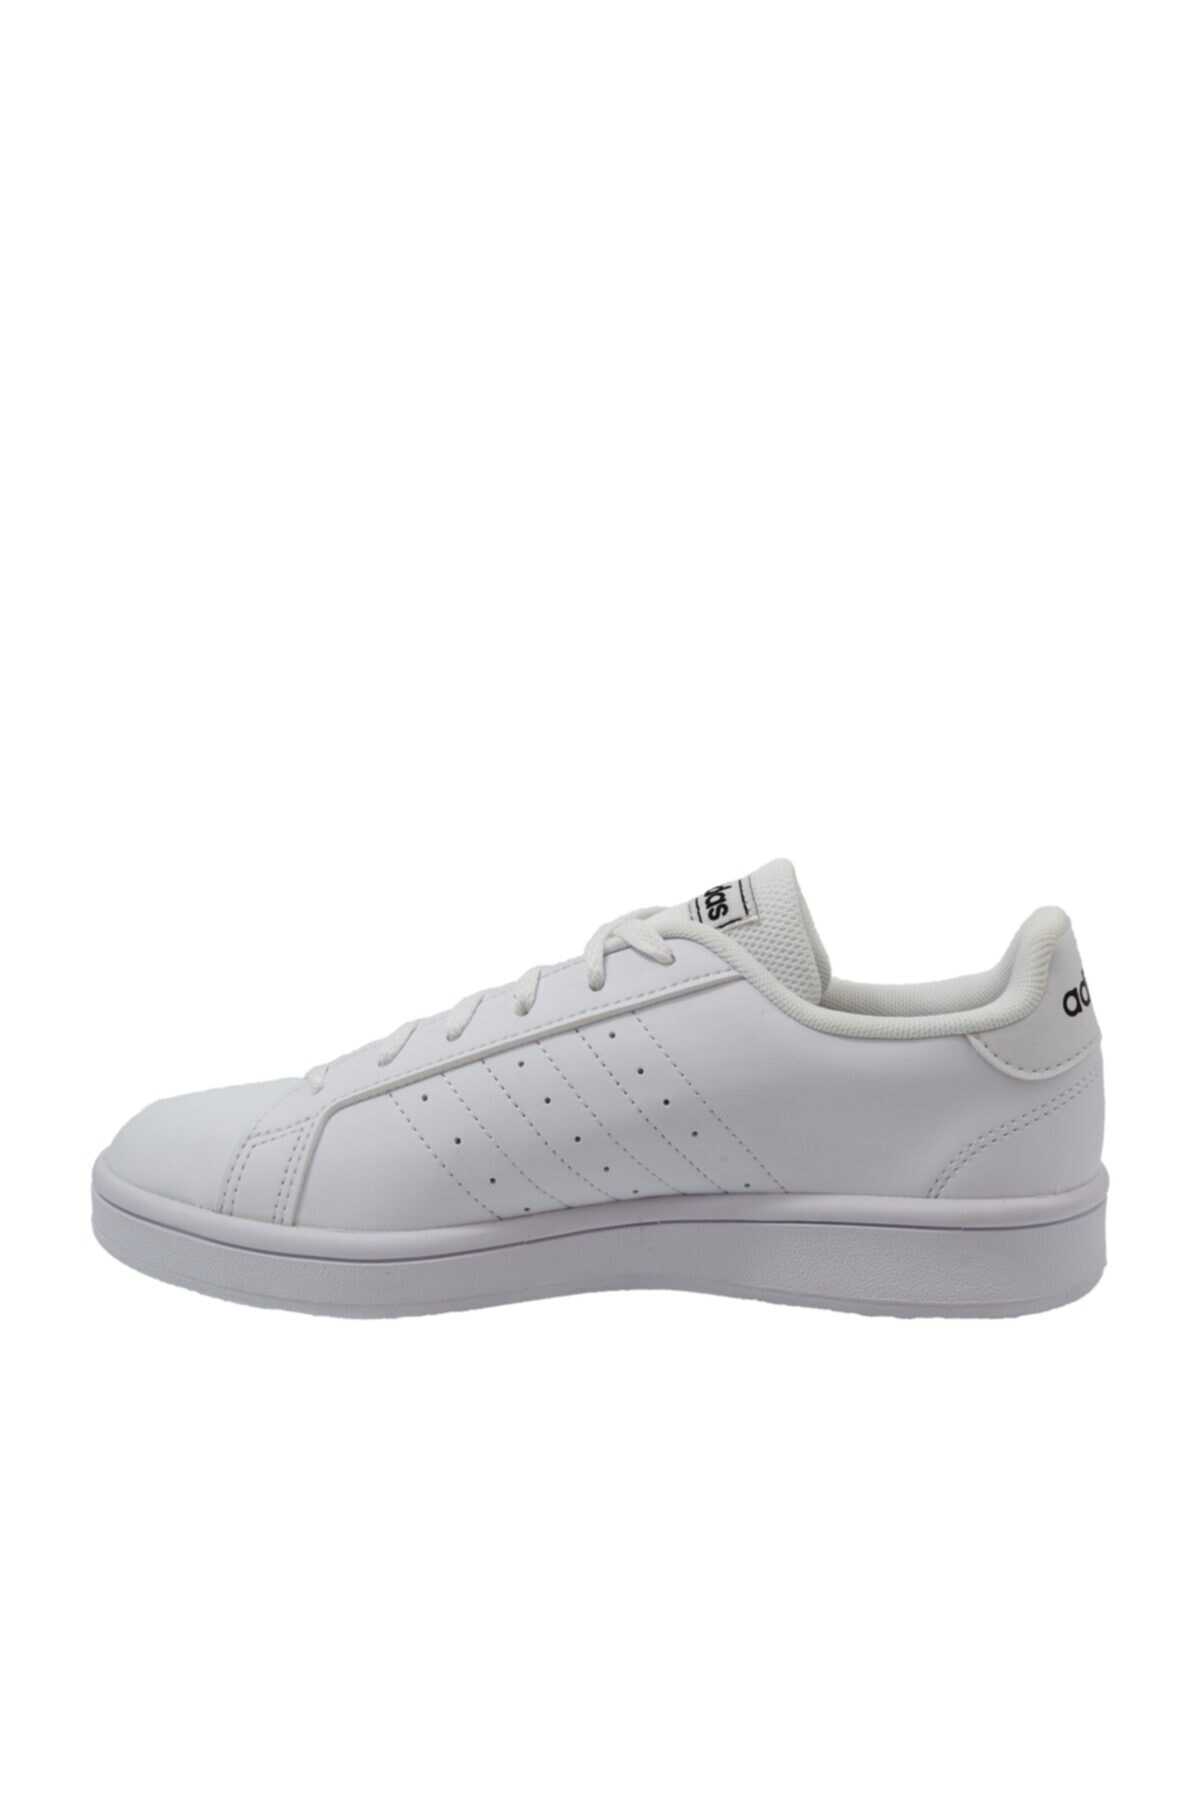 کفش اسپرت زنانه سری Grand Court Base سفید برند adidas 